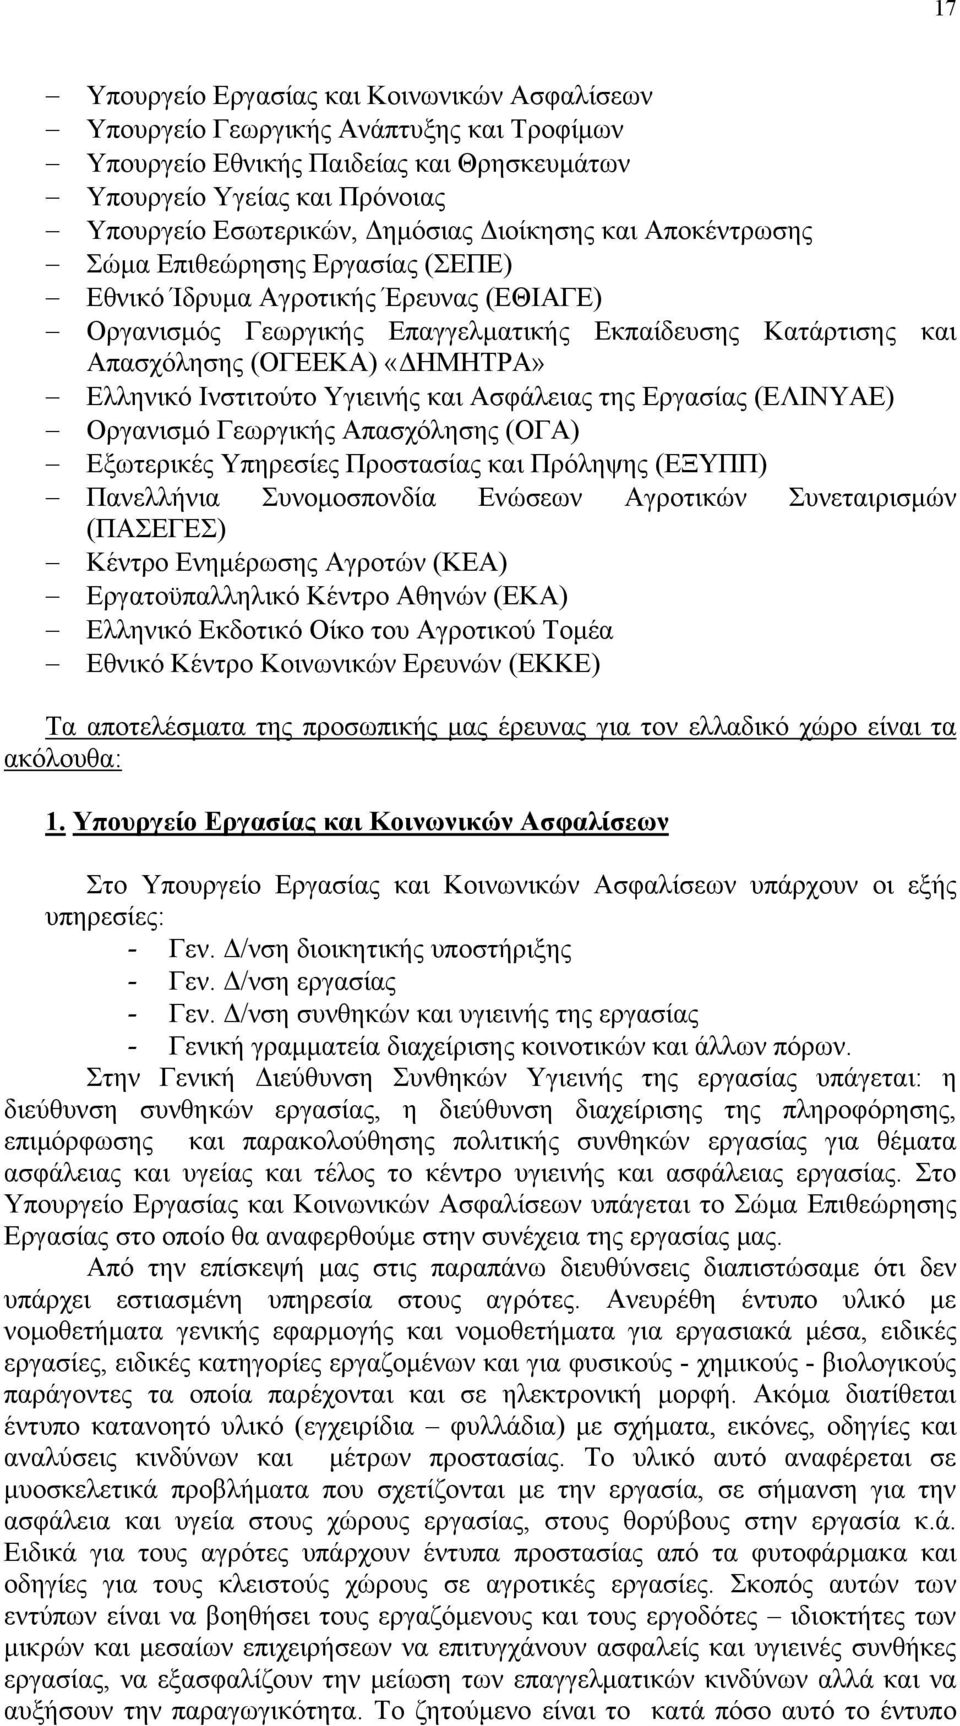 Ελληνικό Ινστιτούτο Υγιεινής και Ασφάλειας της Εργασίας (ΕΛΙΝΥΑΕ) Οργανισμό Γεωργικής Απασχόλησης (ΟΓΑ) Εξωτερικές Υπηρεσίες Προστασίας και Πρόληψης (ΕΞΥΠΠ) Πανελλήνια Συνομοσπονδία Ενώσεων Αγροτικών